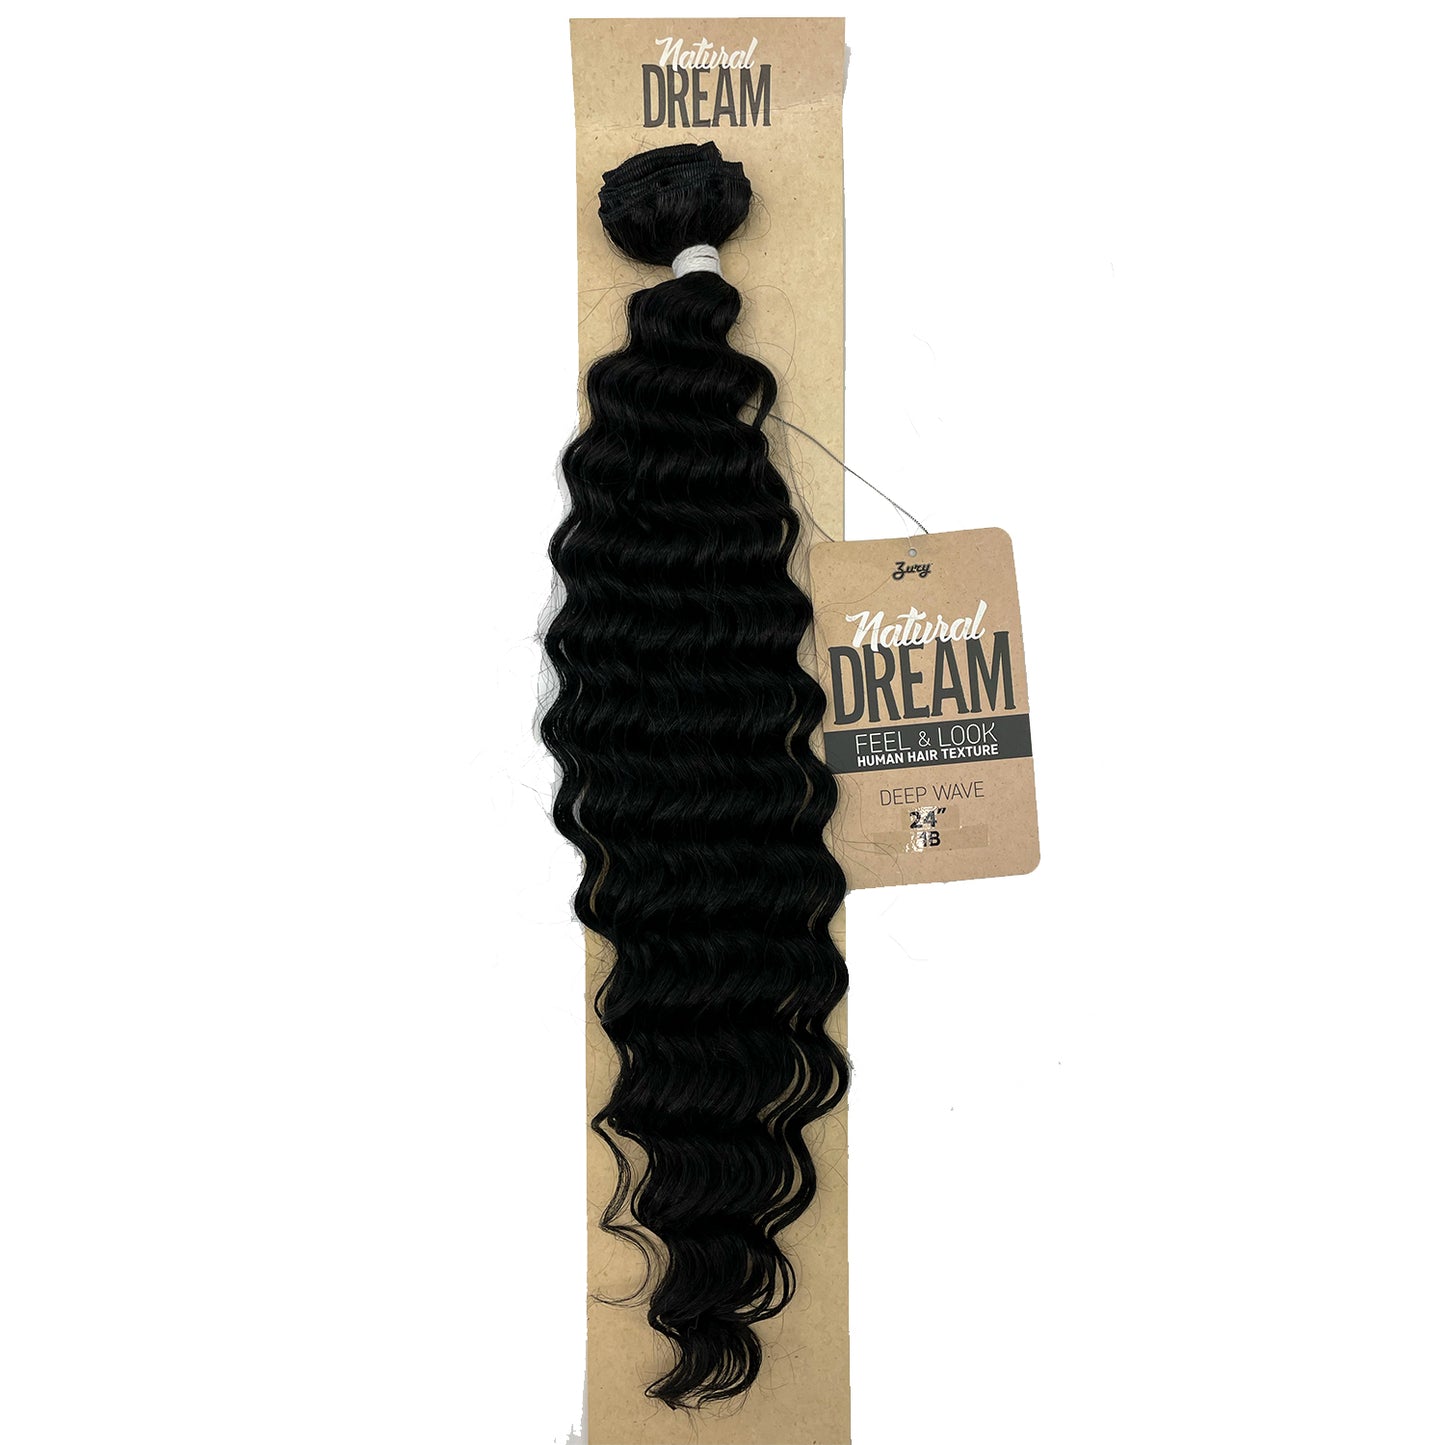 Zury Natural Dream Feel & Look Hair Extension Bundle, Deep Wave 24" 1b black